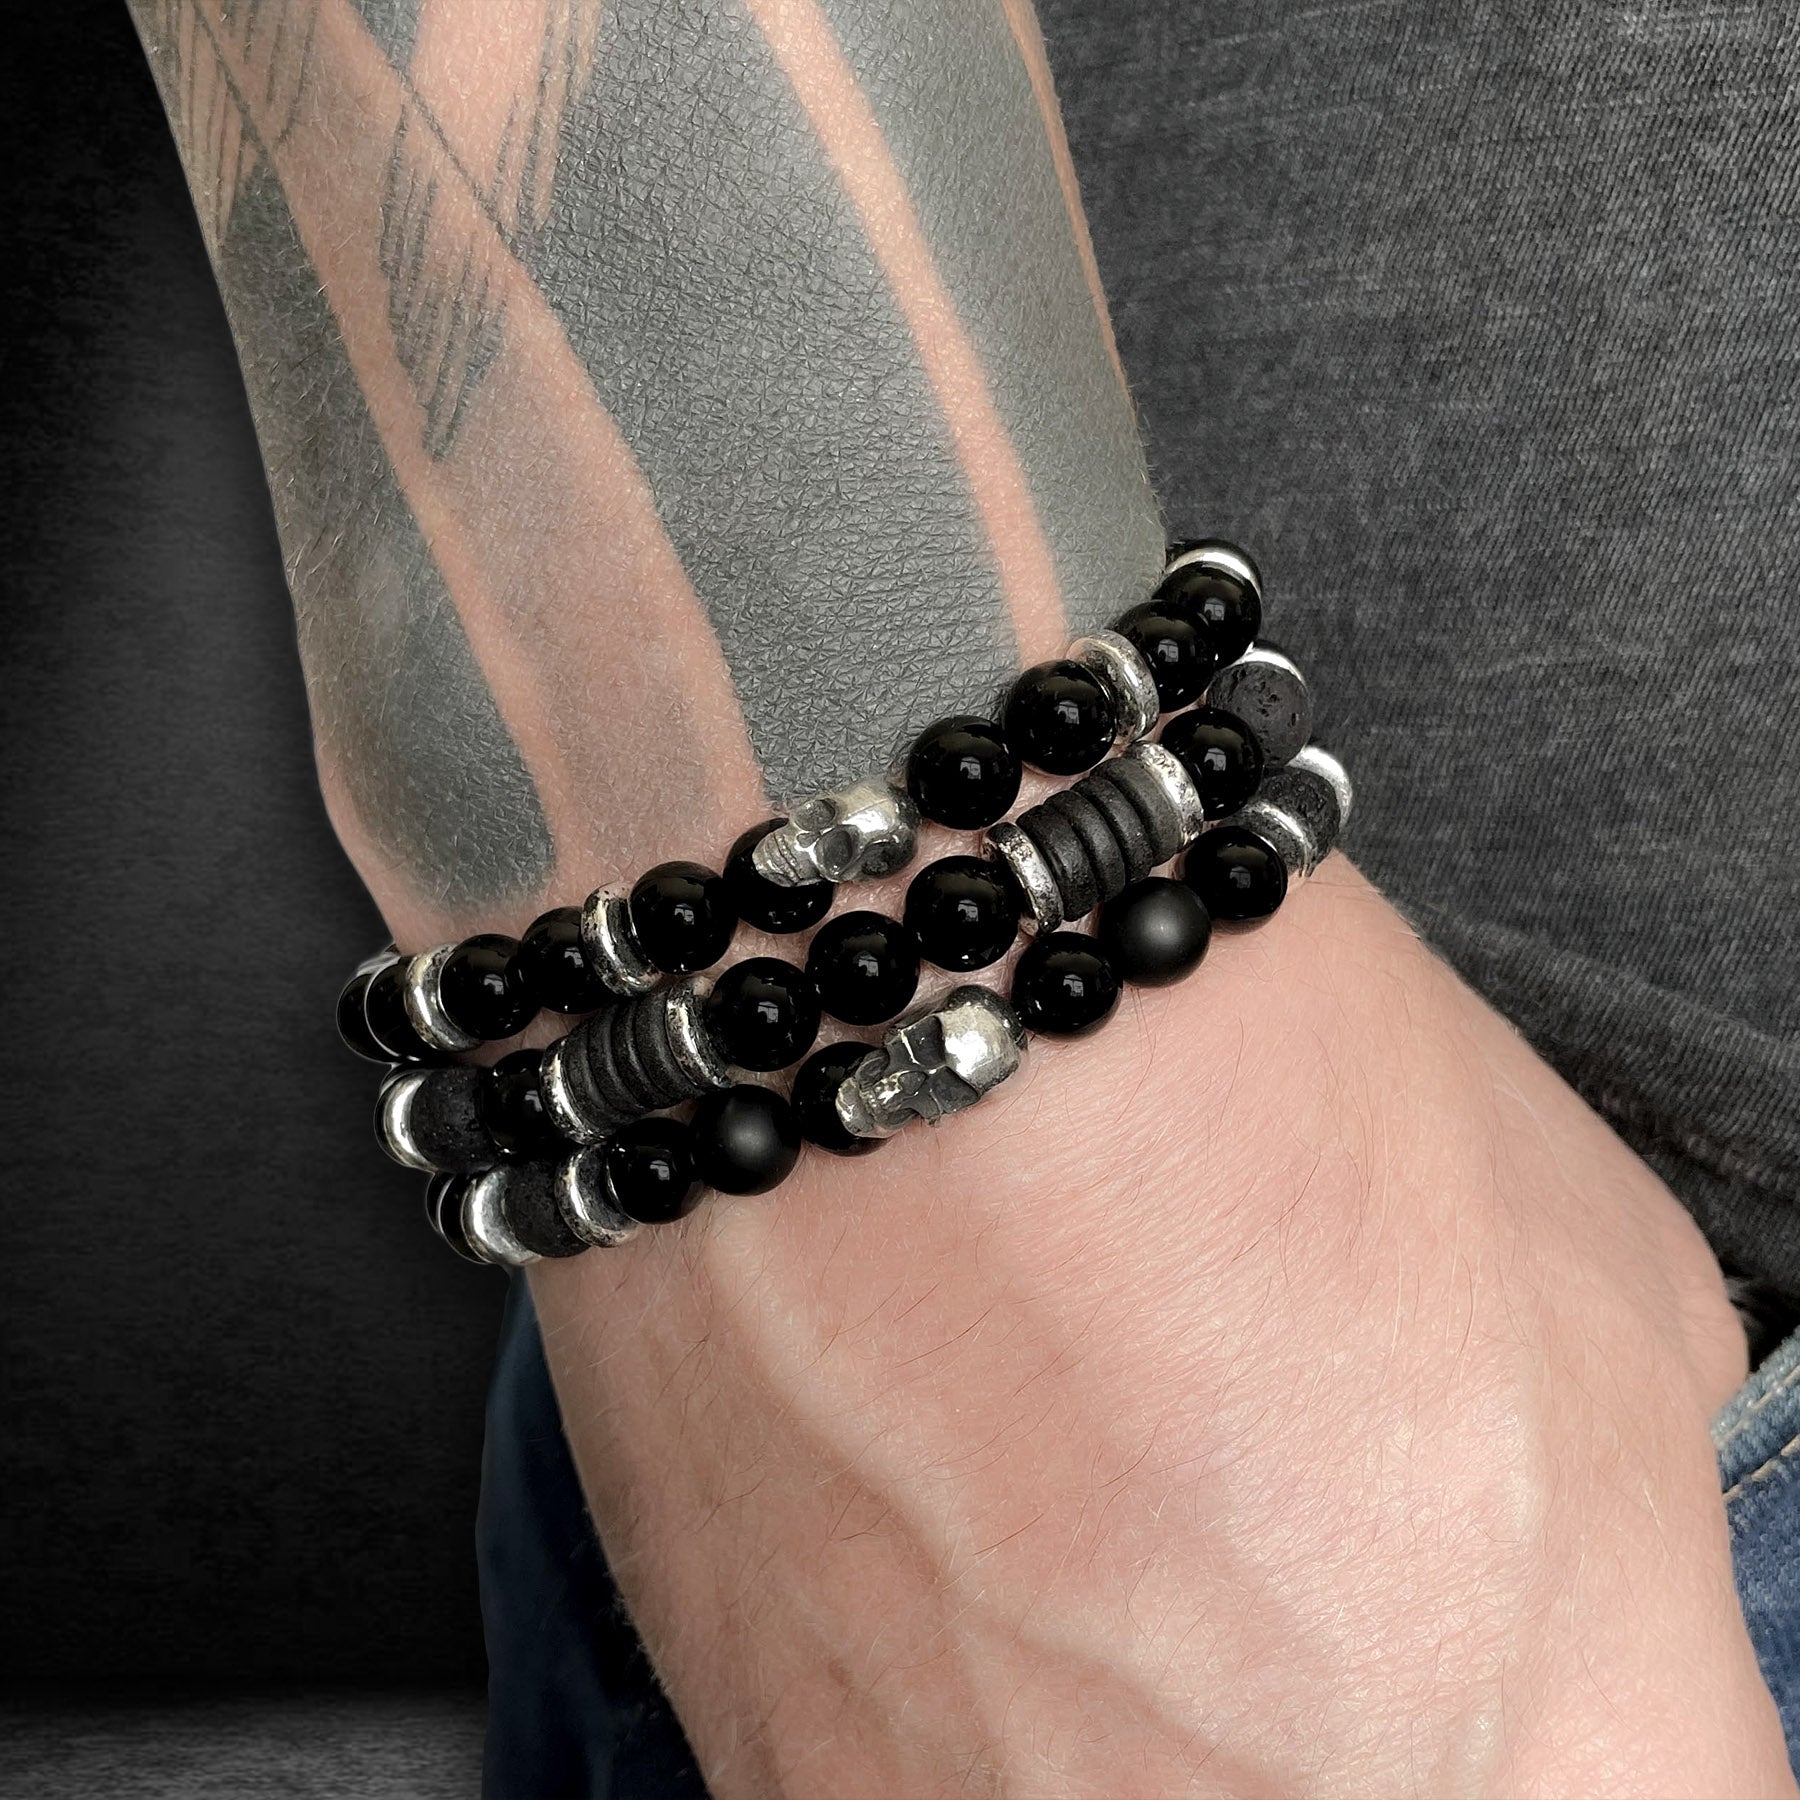 Onyx skull gemstone bracelet by Rock My Wings